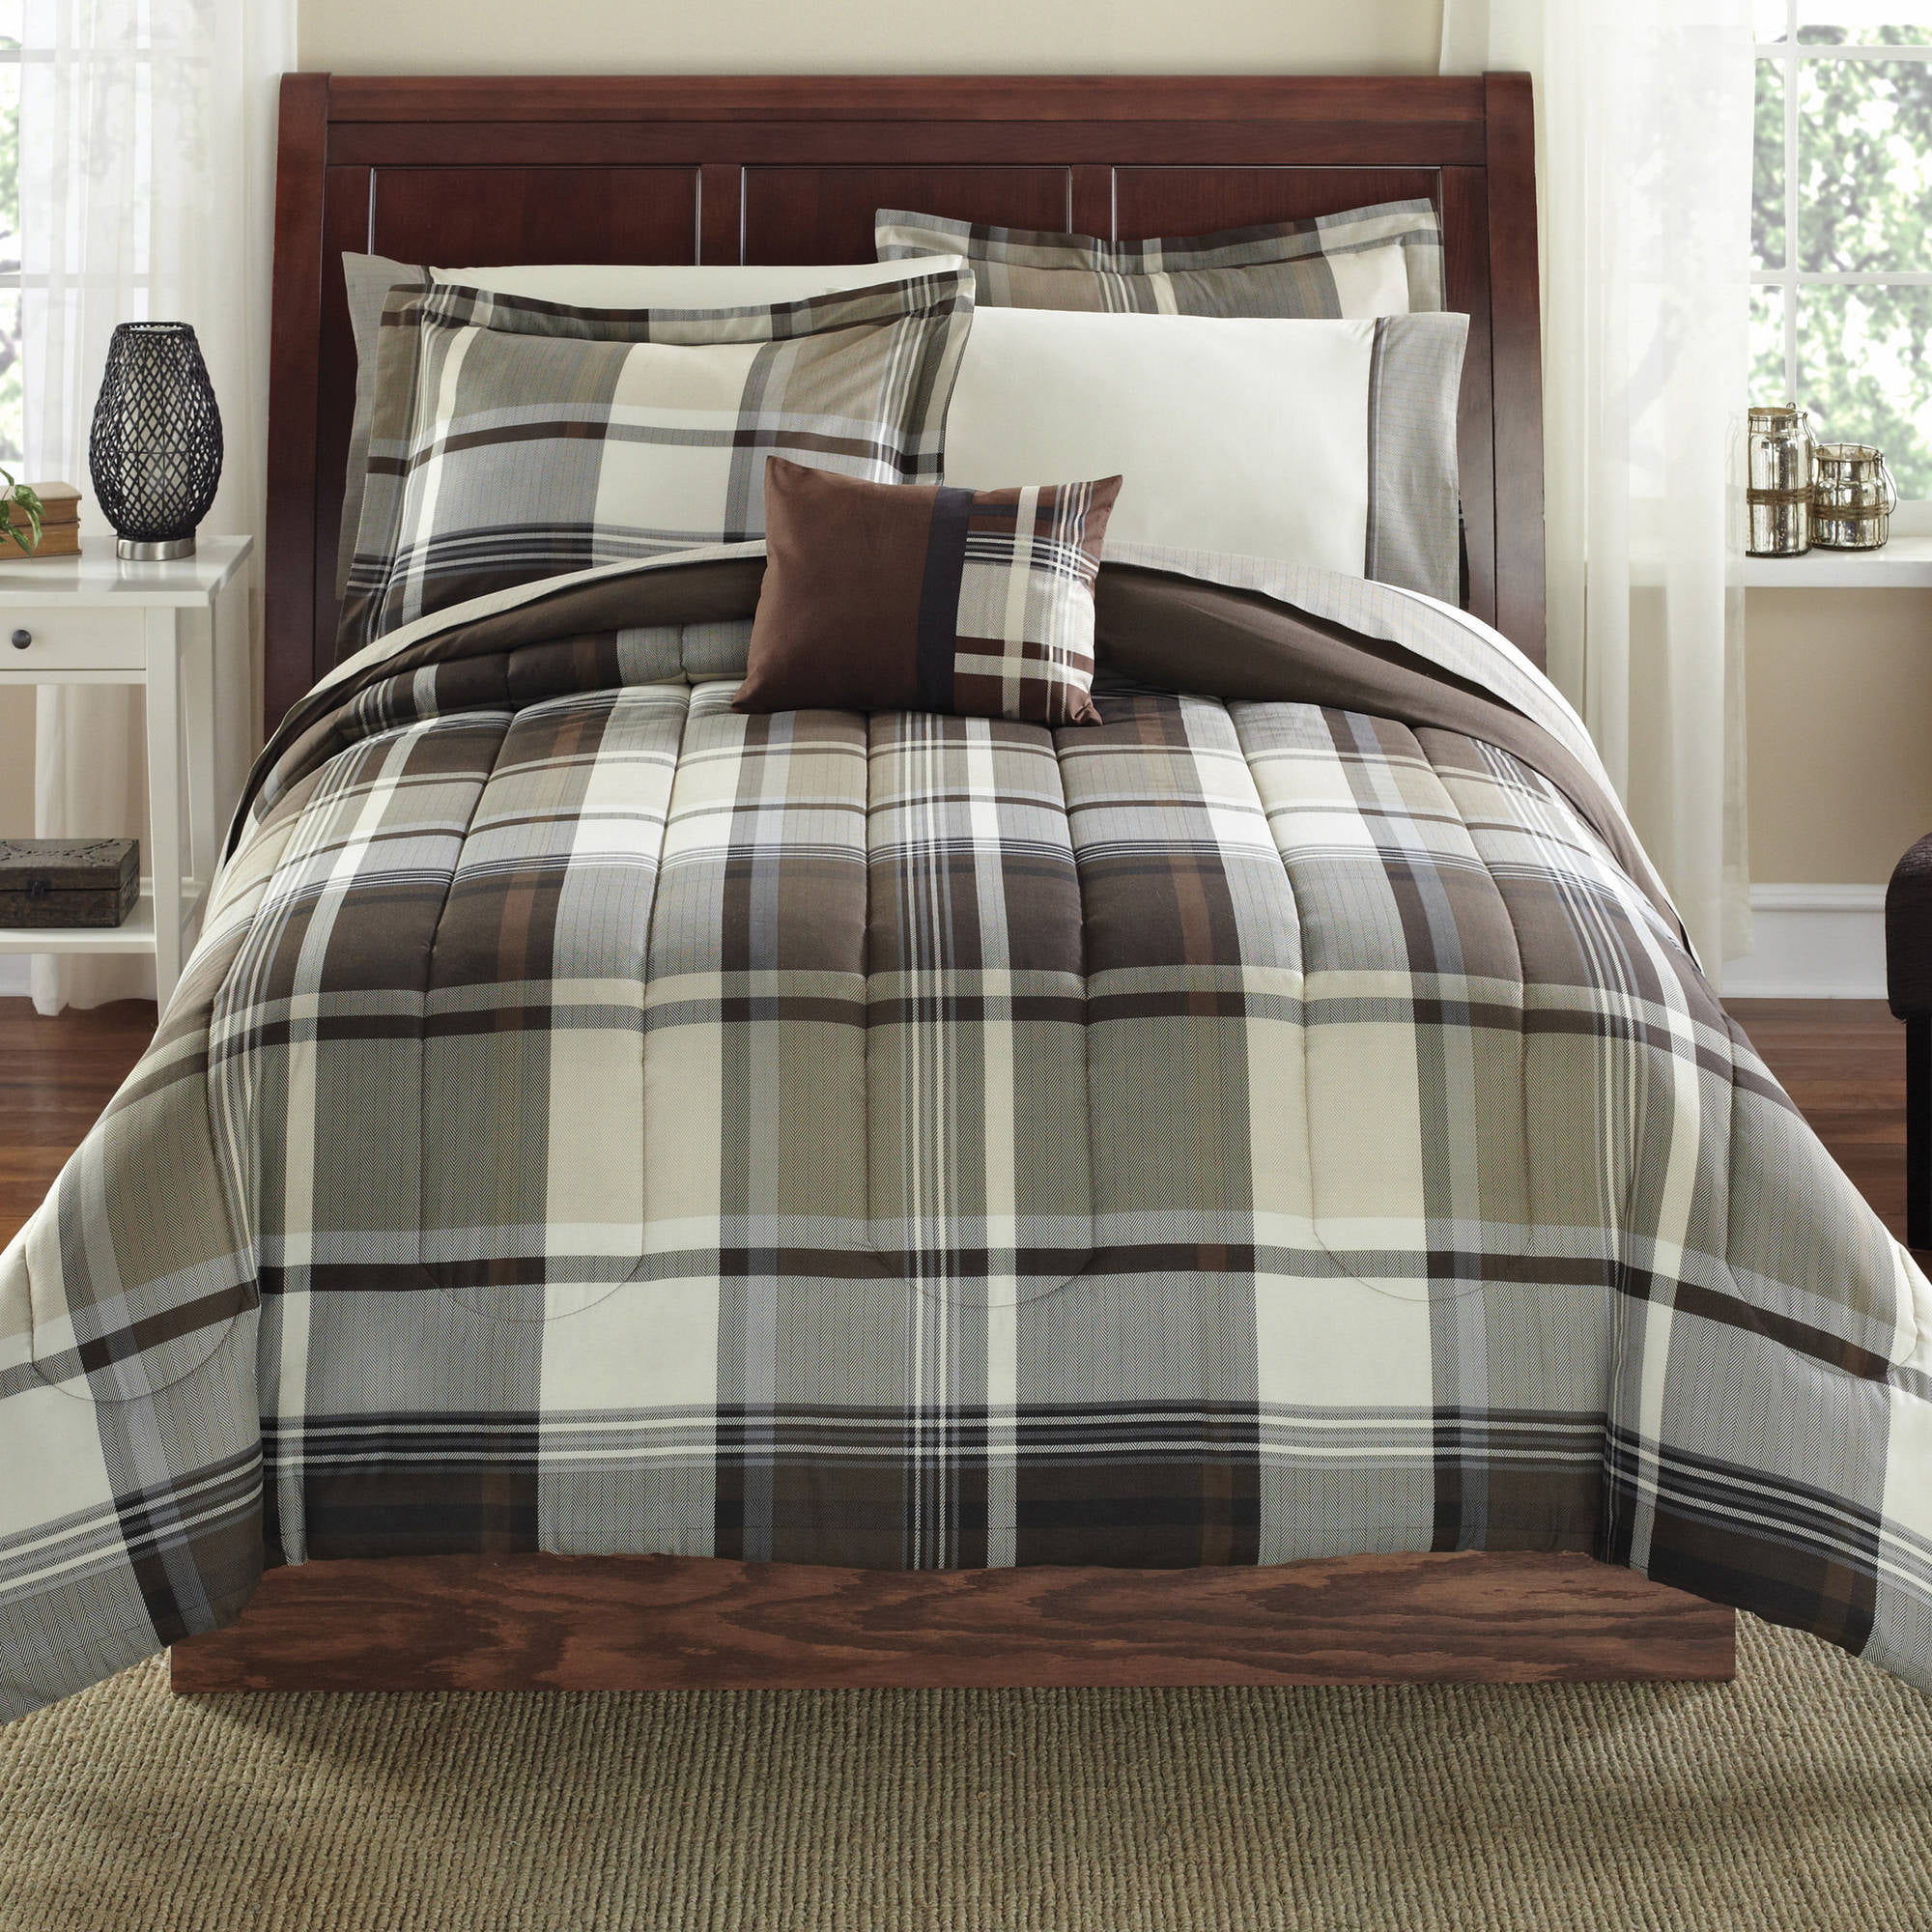 Tealp Gingham Buffalo Check Fitted Bottom Sheet Bedskirt//Bedspread Set Mattress